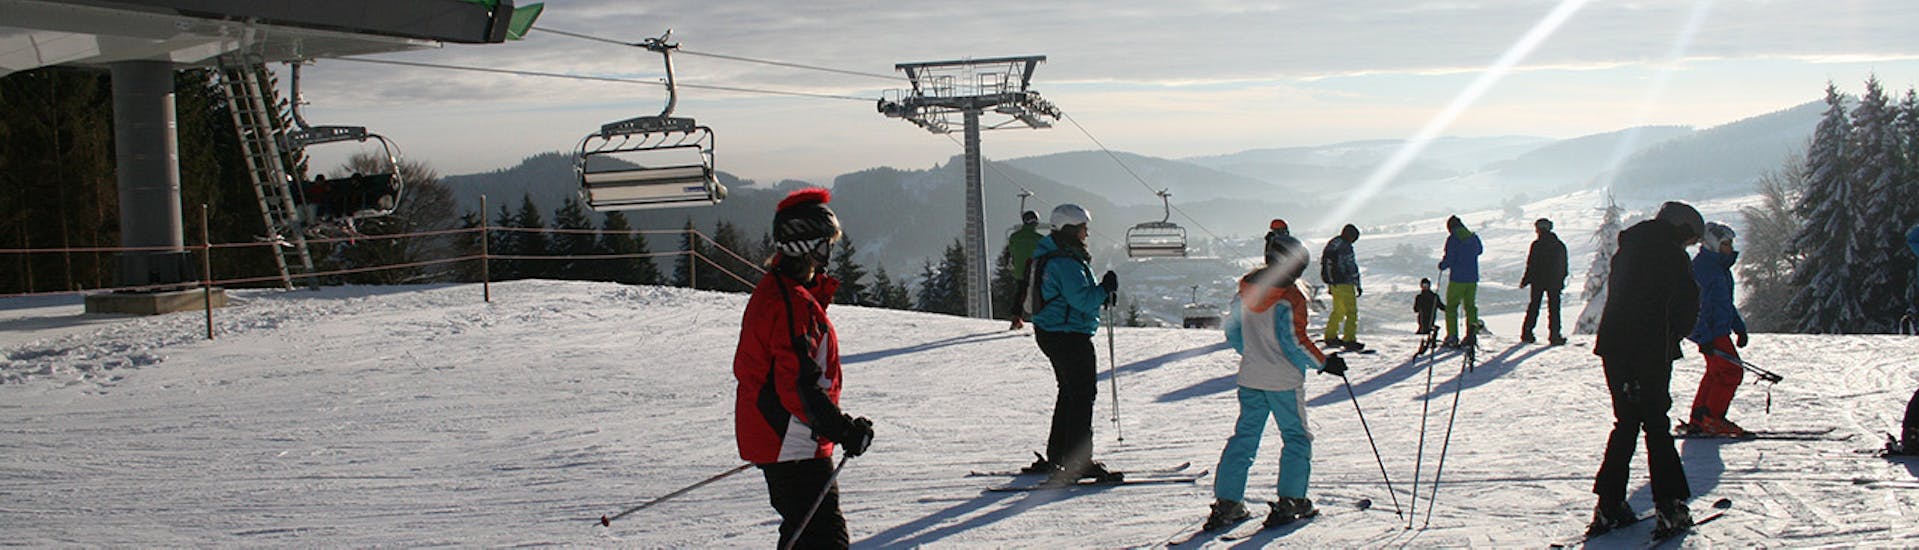 Lezioni di sci per adulti a partire da 17 anni per principianti.